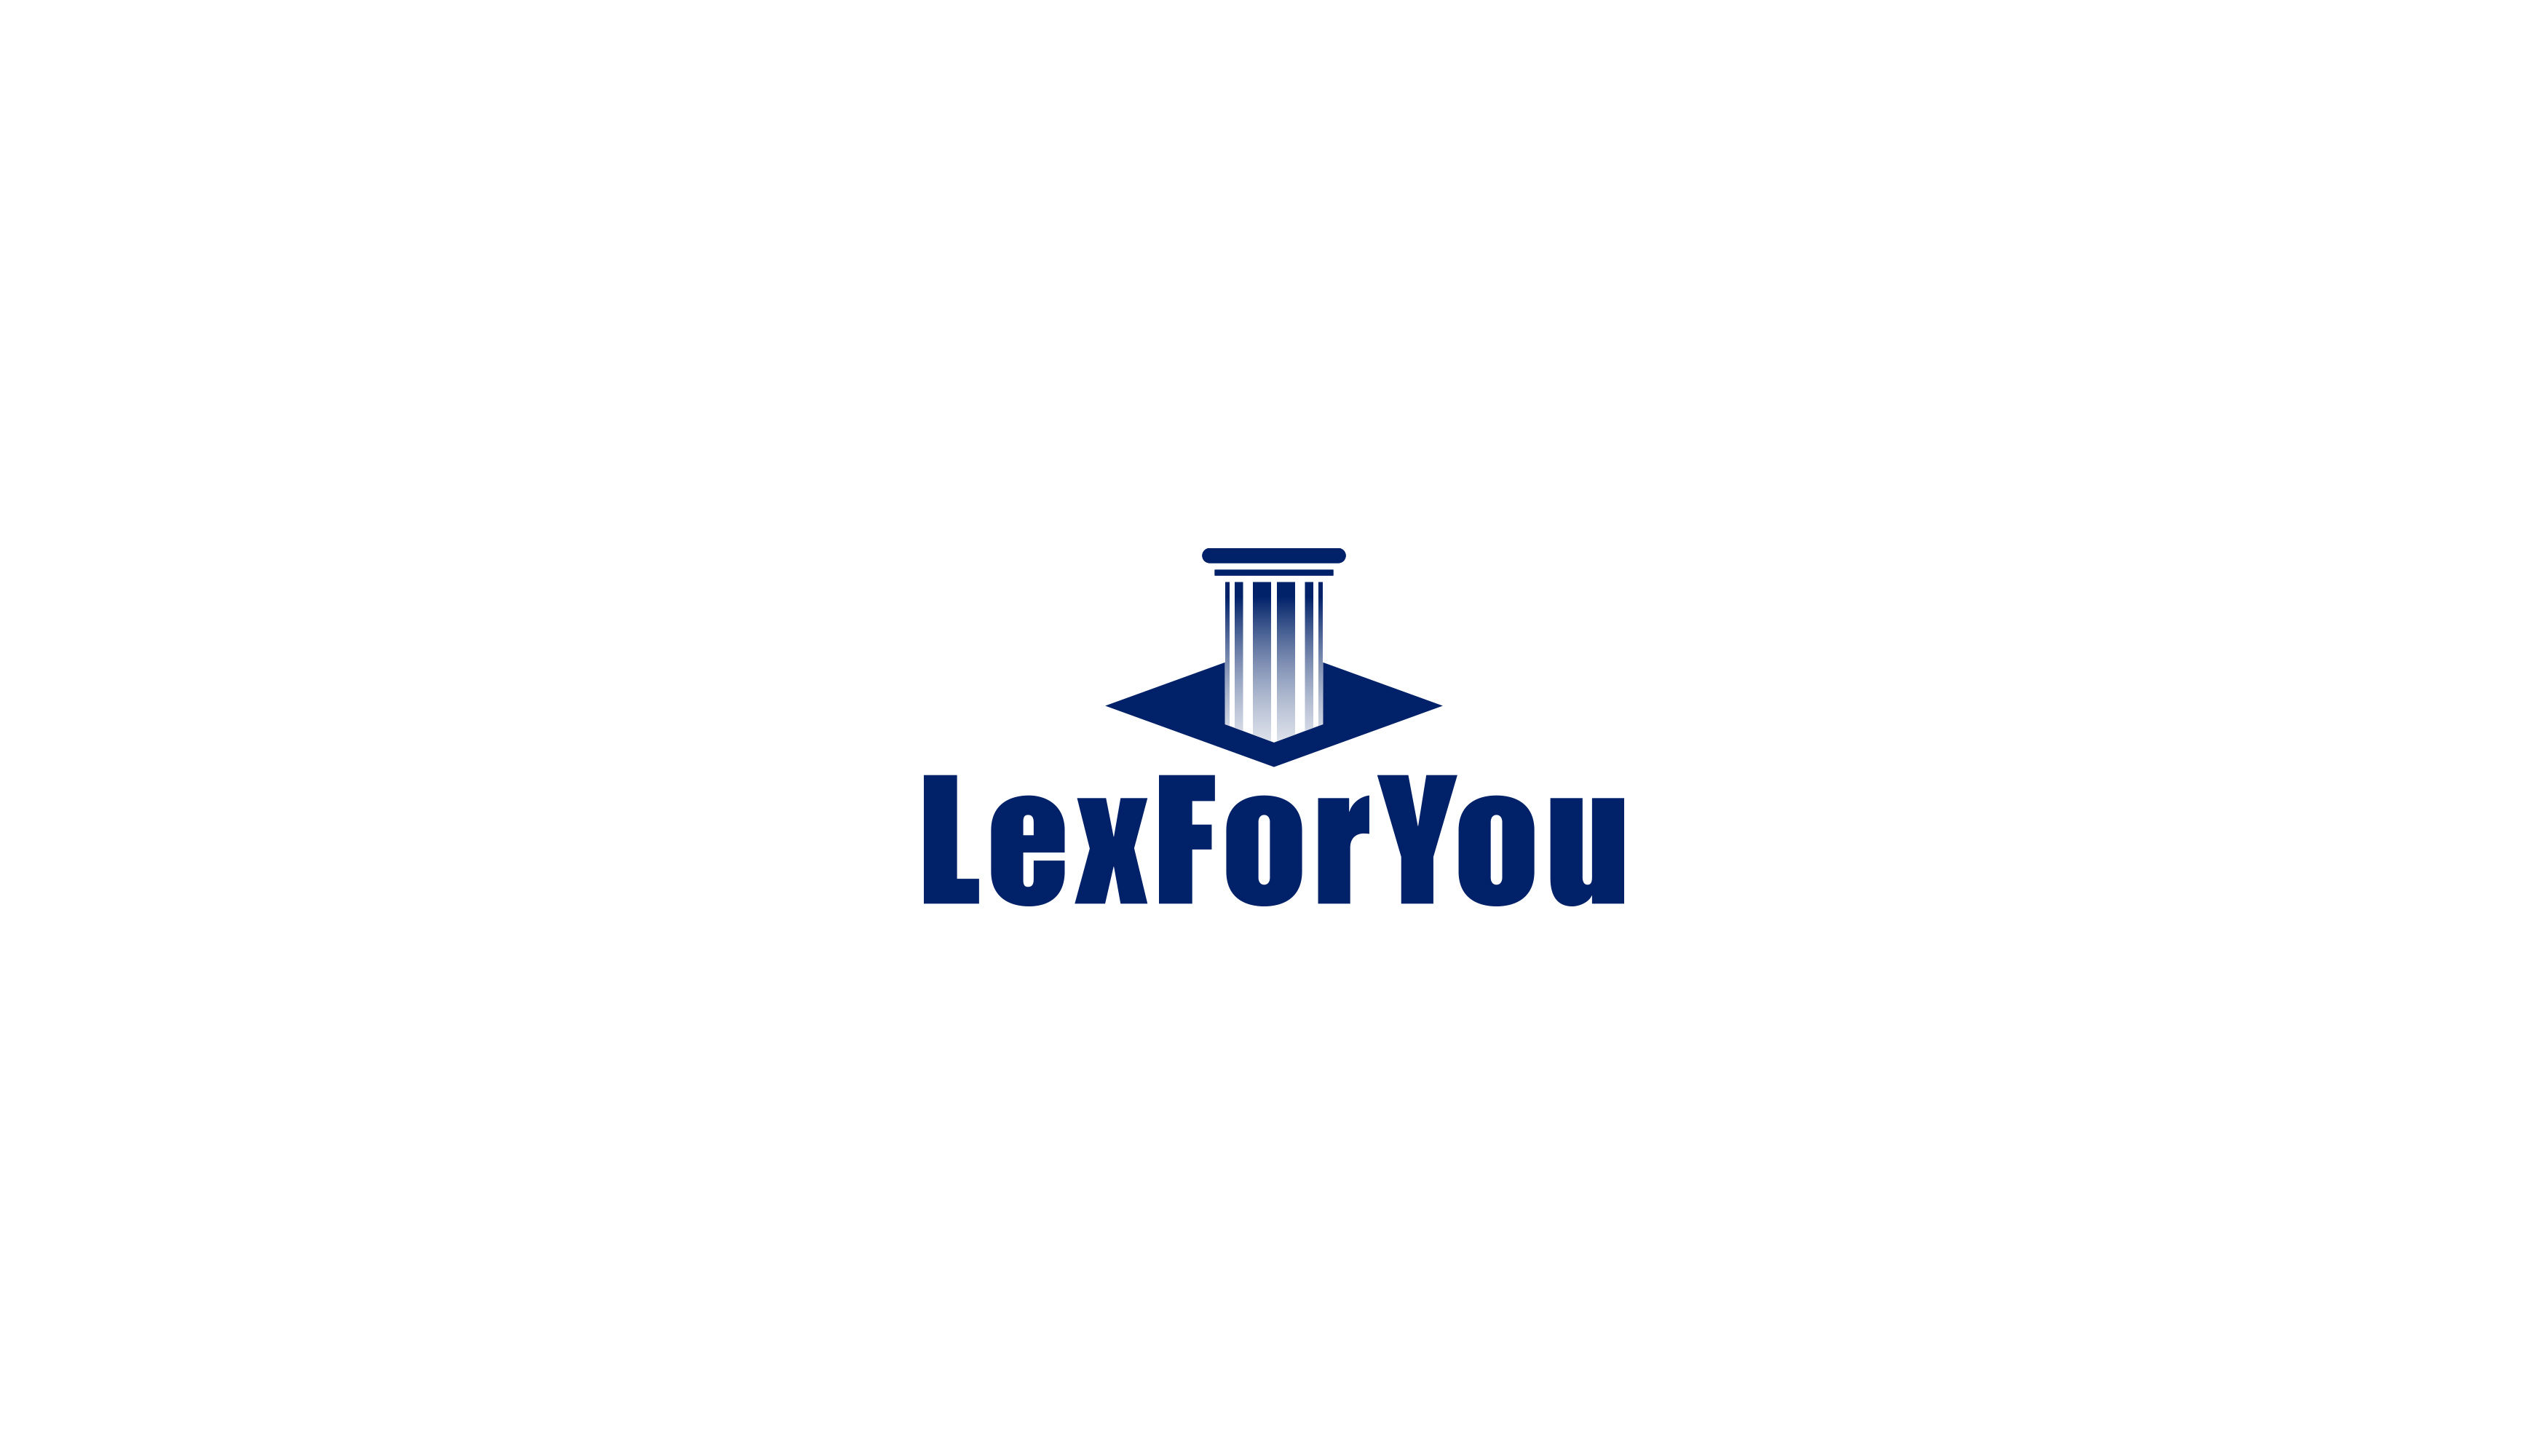 Lex For You Design #1